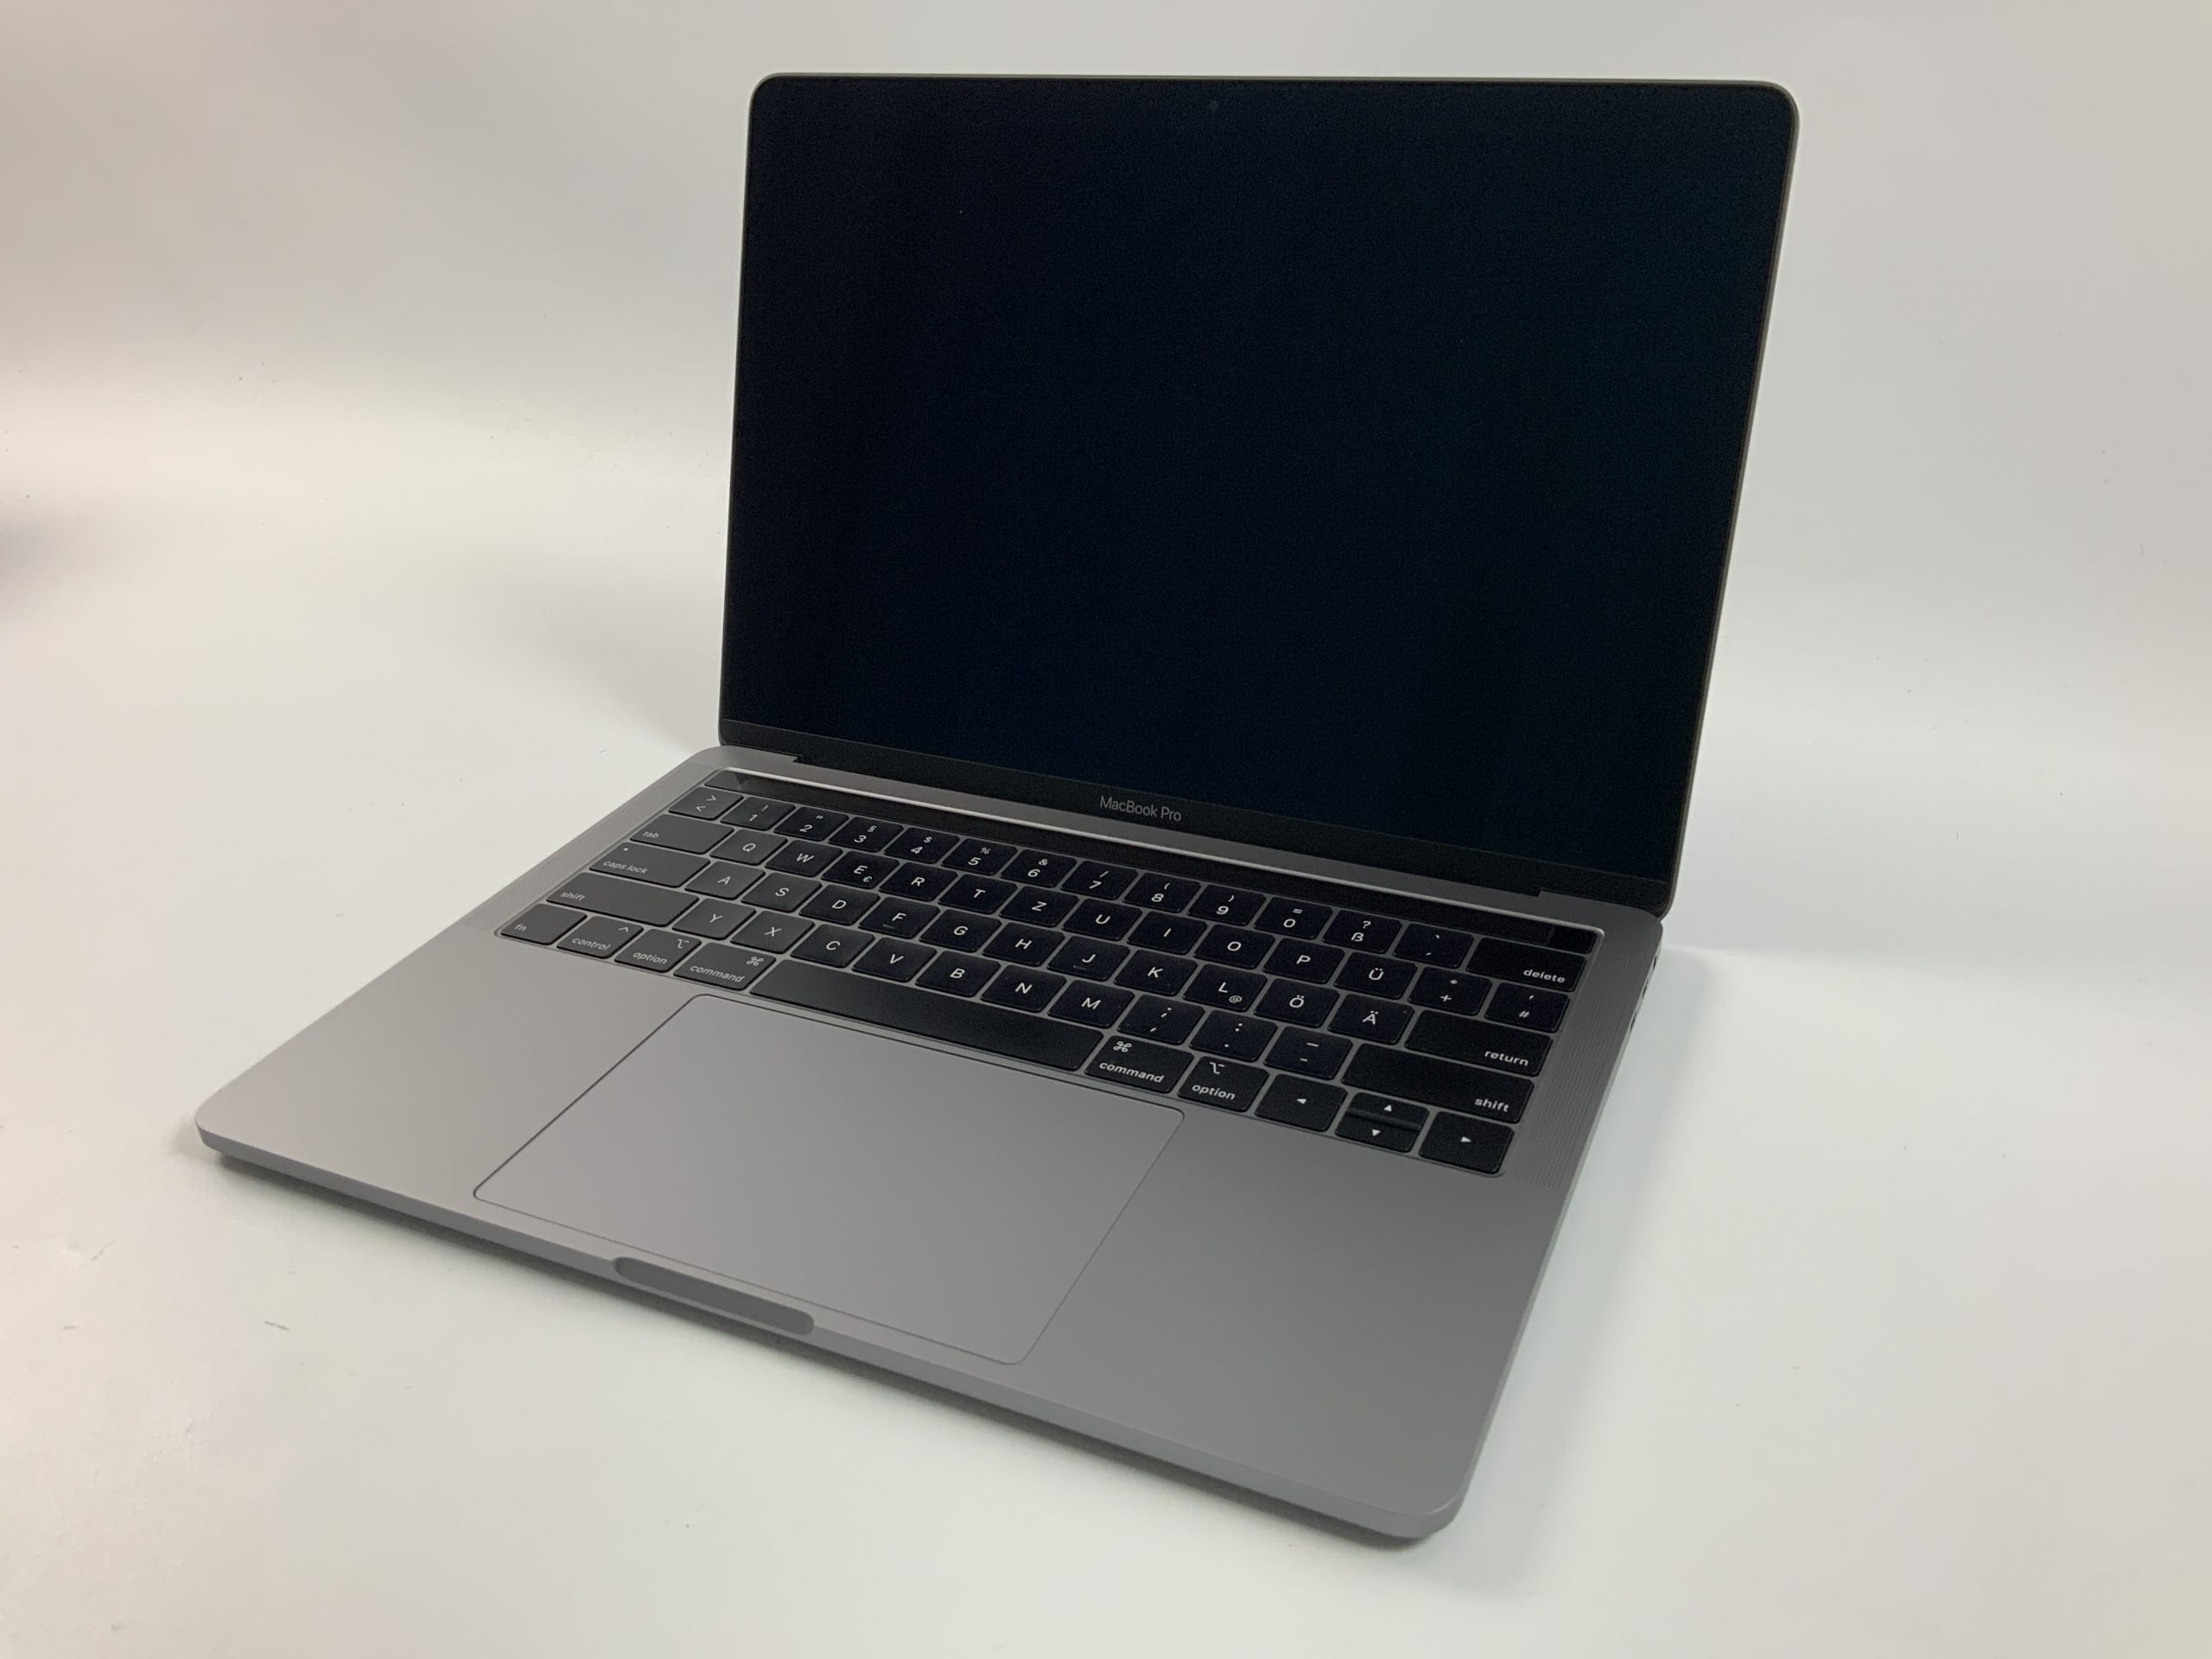 MacBook Pro 13" 4TBT Mid 2018 (Intel Quad-Core i7 2.7 GHz 16 GB RAM 1 TB SSD), Space Gray, Intel Quad-Core i7 2.7 GHz, 16 GB RAM, 1 TB SSD, bild 1